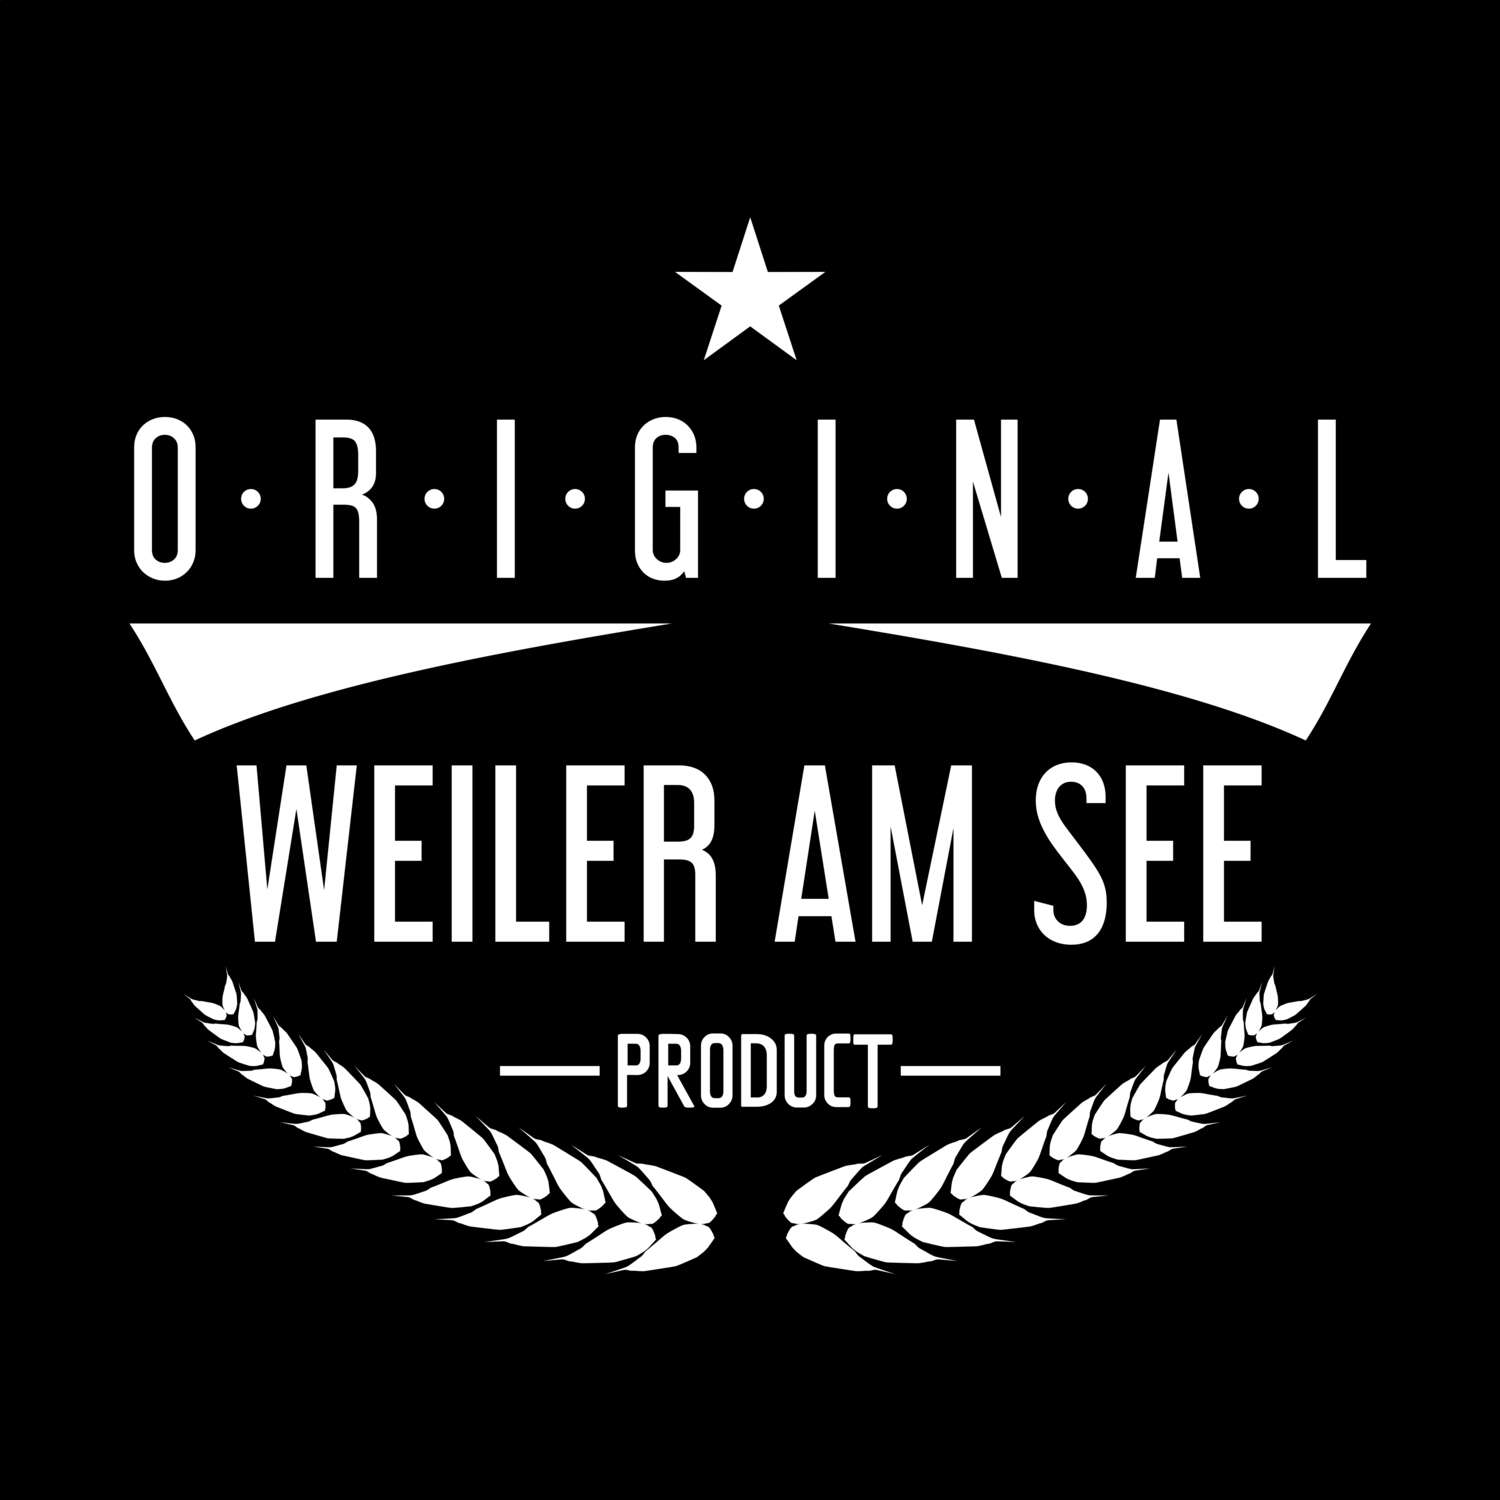 Weiler am See T-Shirt »Original Product«